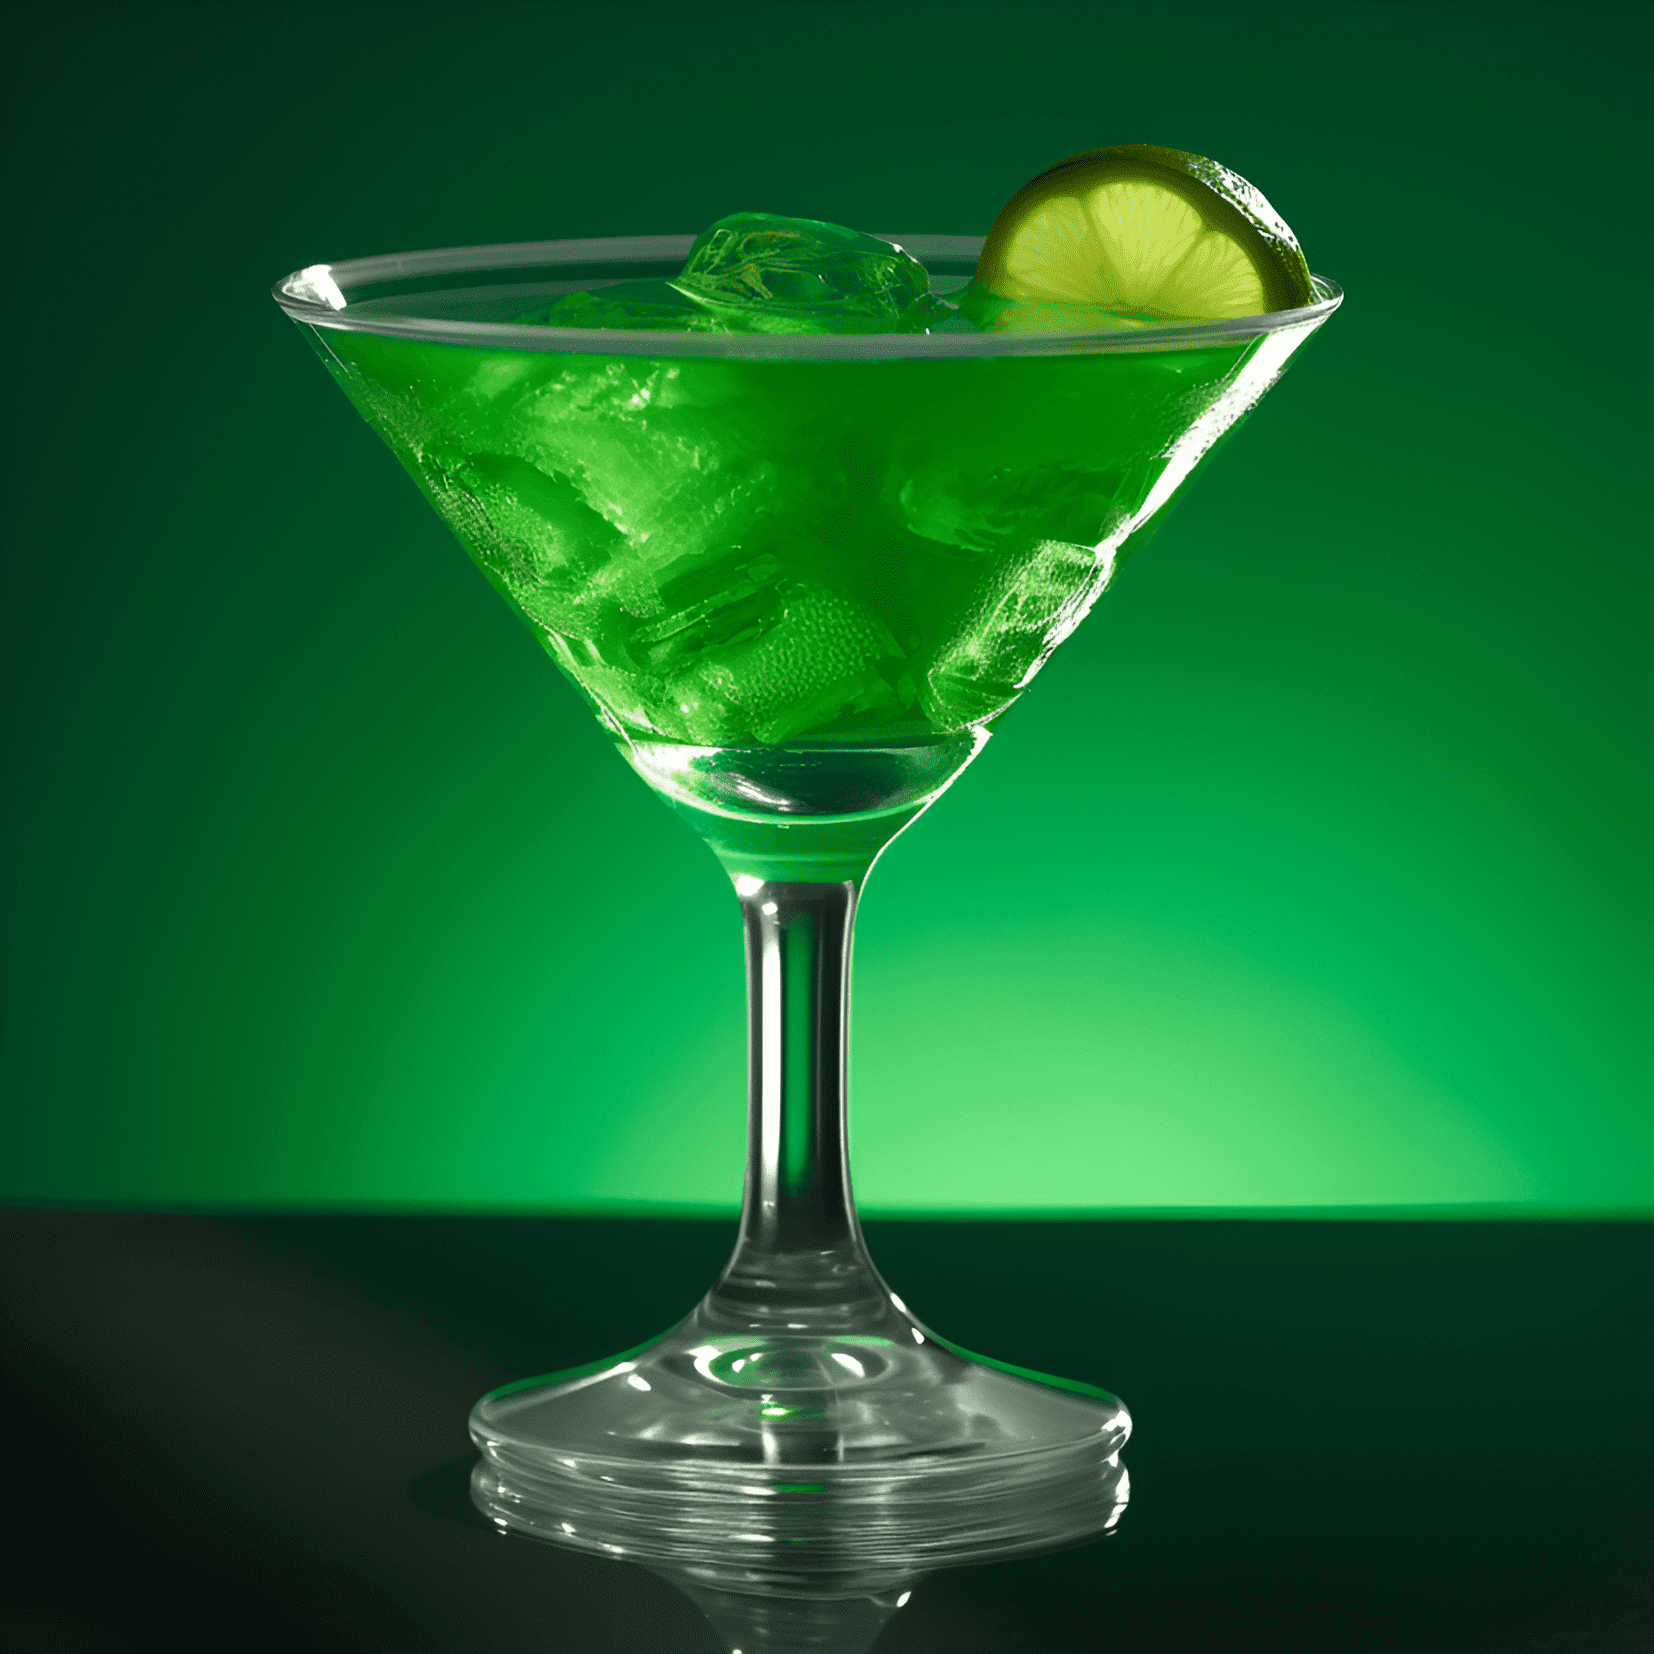 El cóctel Green Hornet es una bebida refrescante, dulce y ligeramente agria con un toque de menta. Tiene un color verde vibrante y una textura suave y aterciopelada.